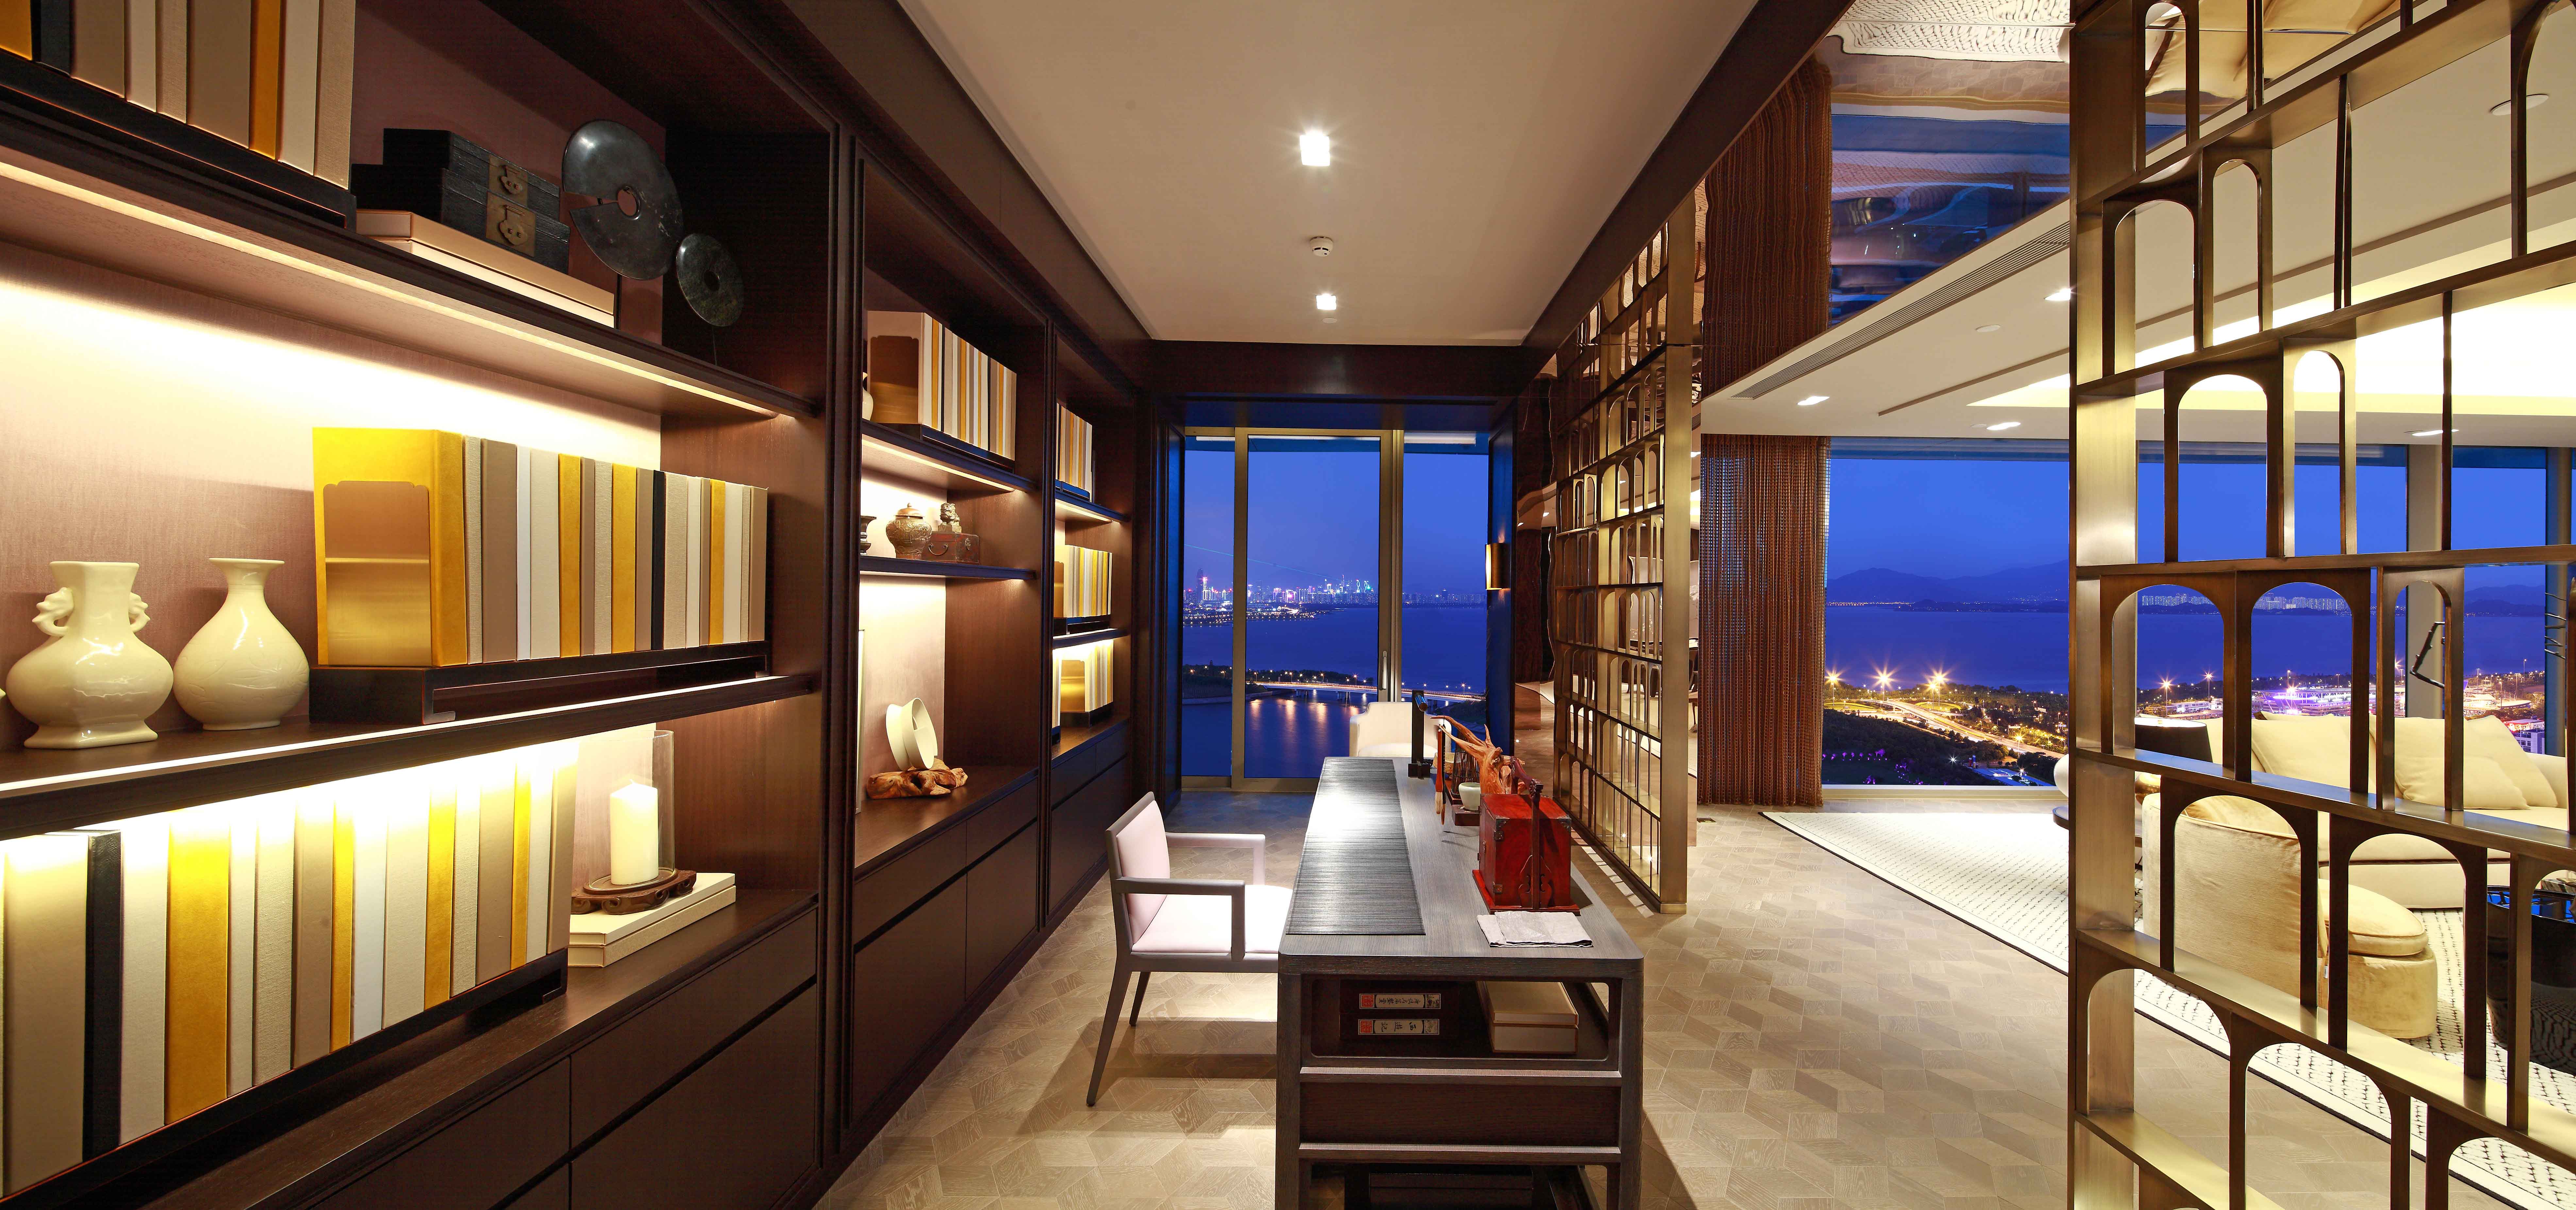 Meubles d'hôtel en Chine, promenade moderne dans le placard, porte en bois, meubles de chambre à coucher, tiroirs de rangement, armoires